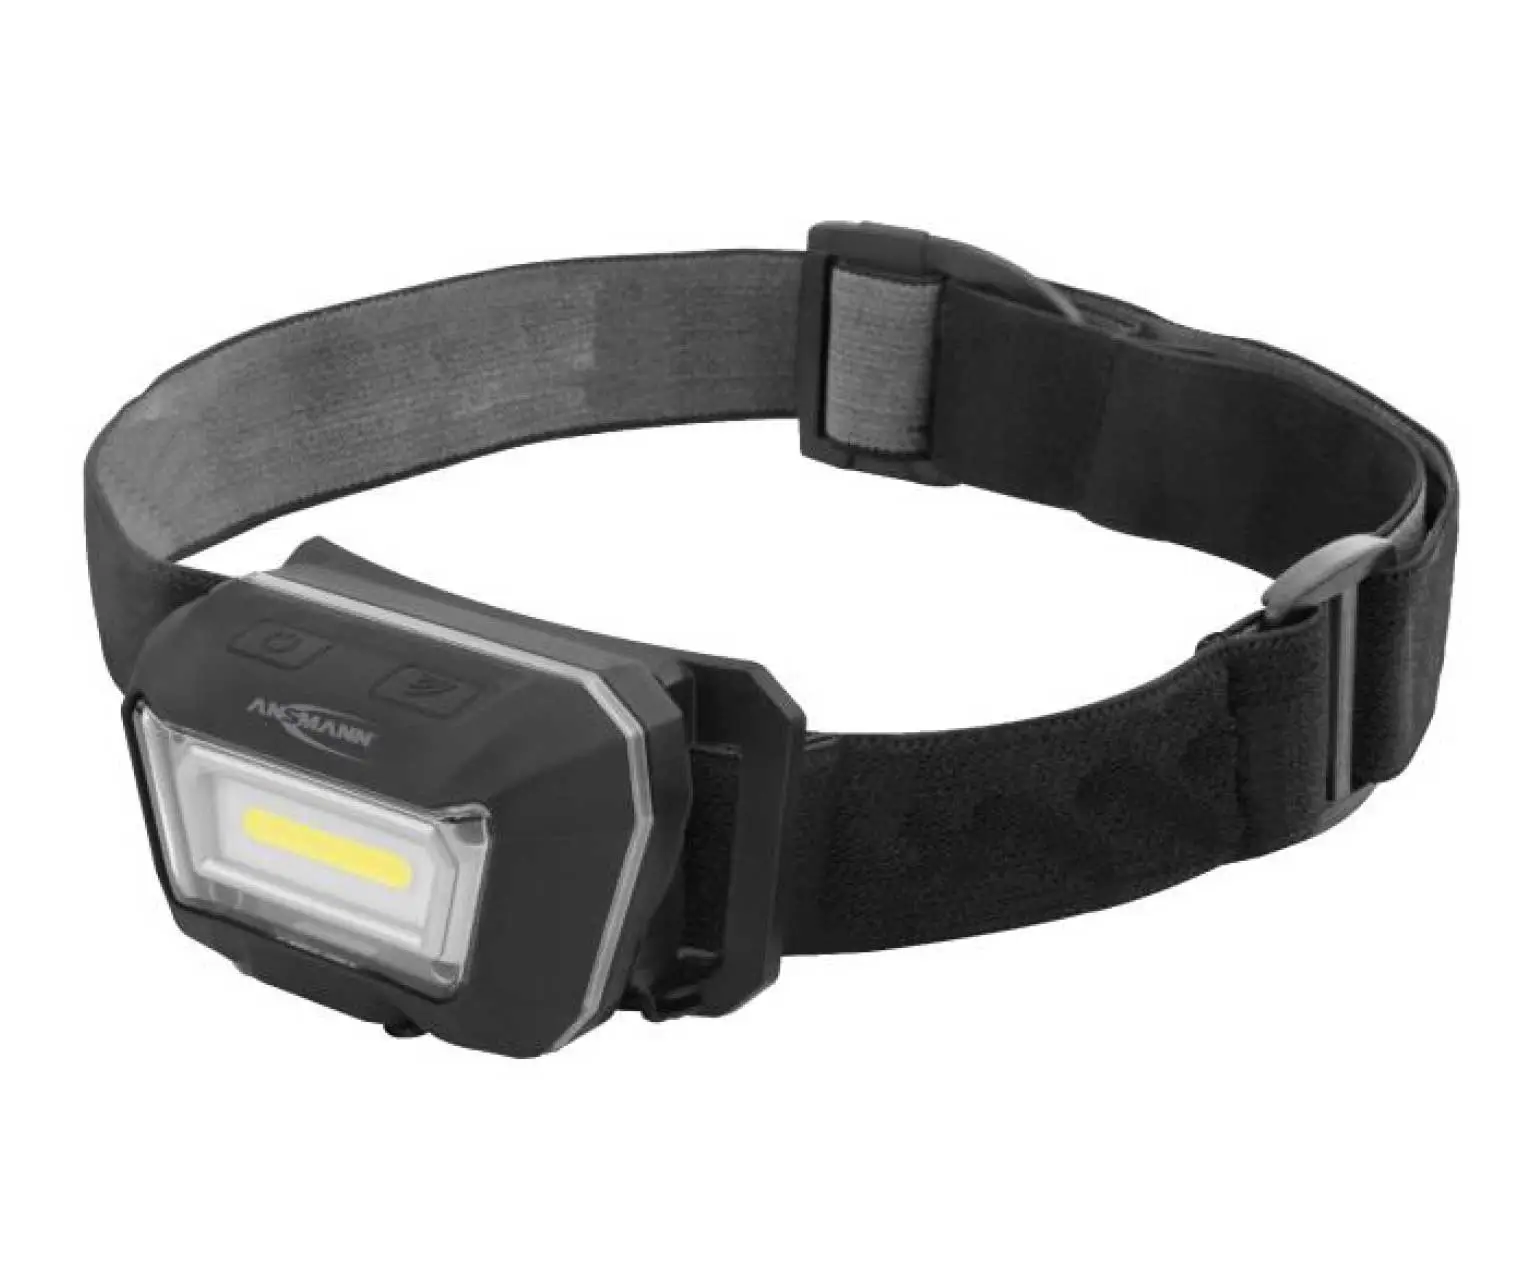 Schwarze LED-Kopflampe mit klappbarem Leuchtenkopf und elastischem Kopfband